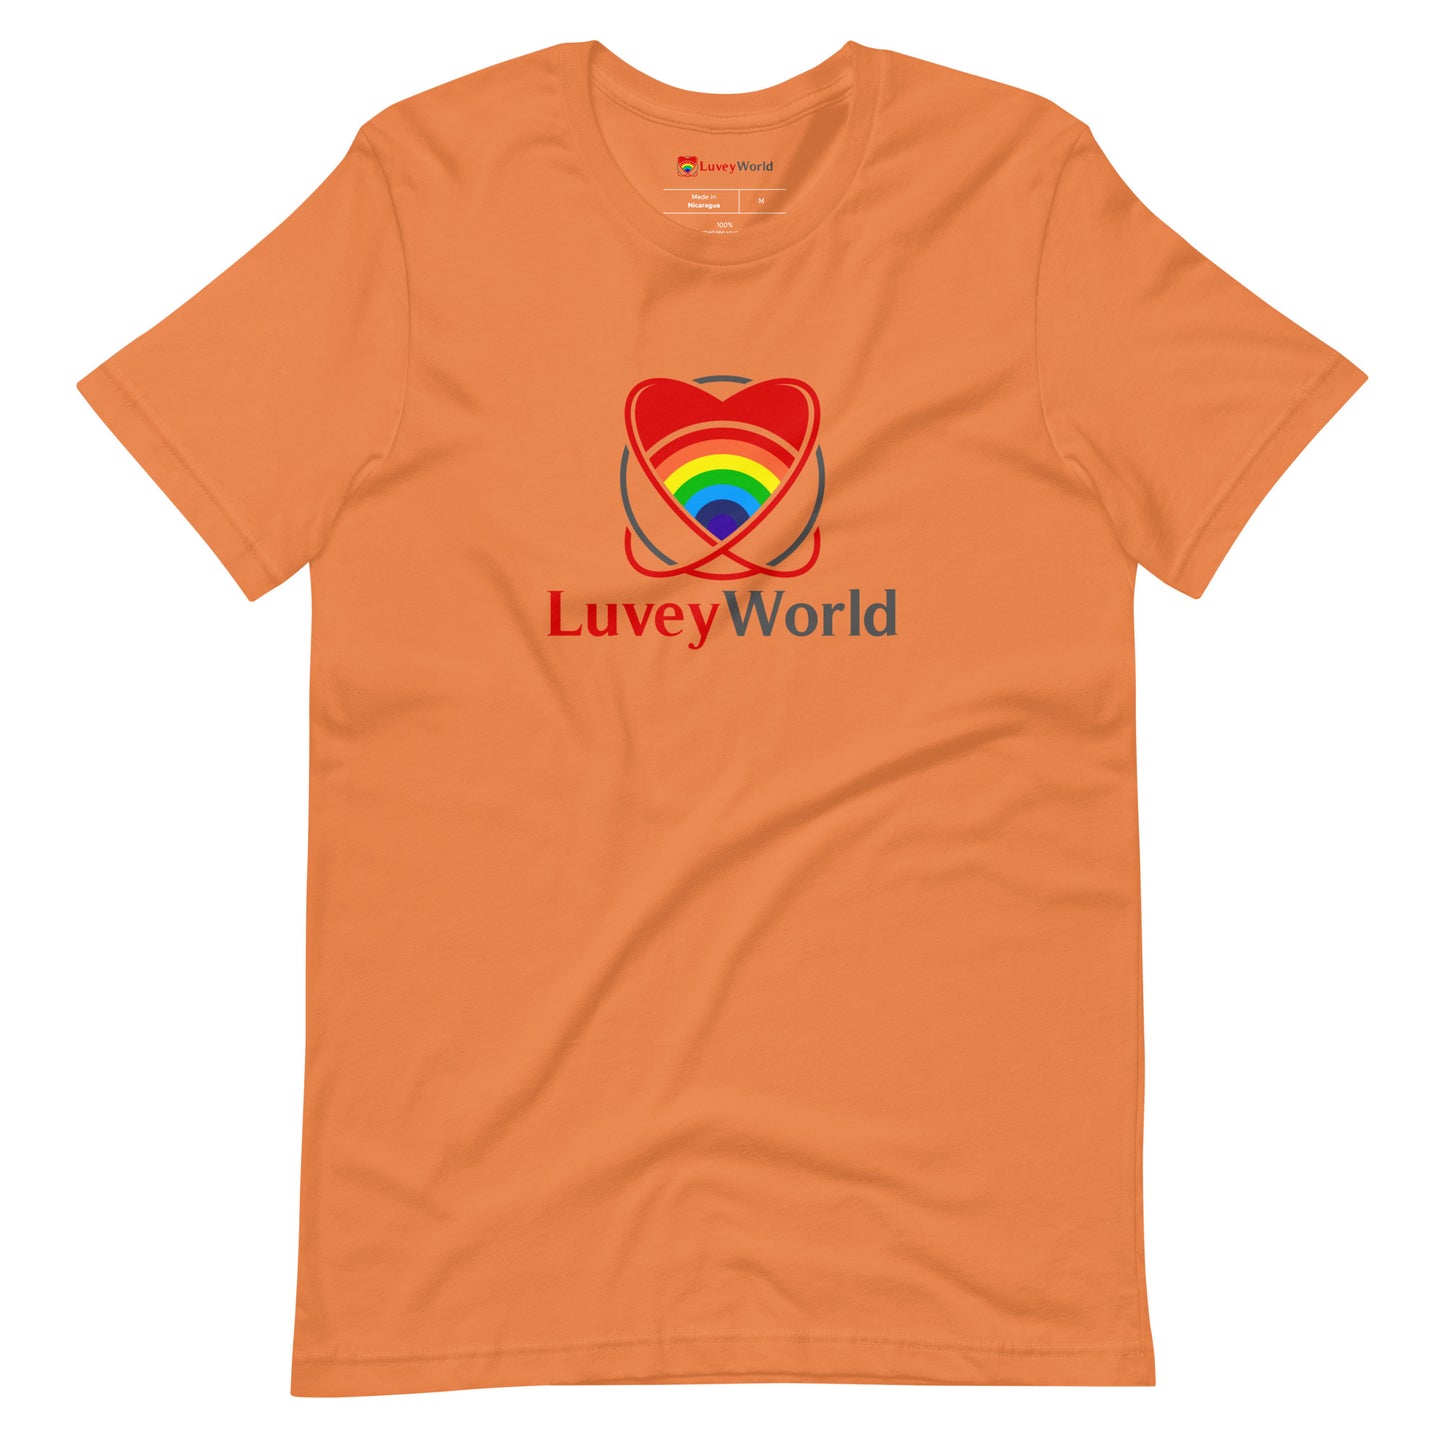 LuveyWorld basic t-shirt